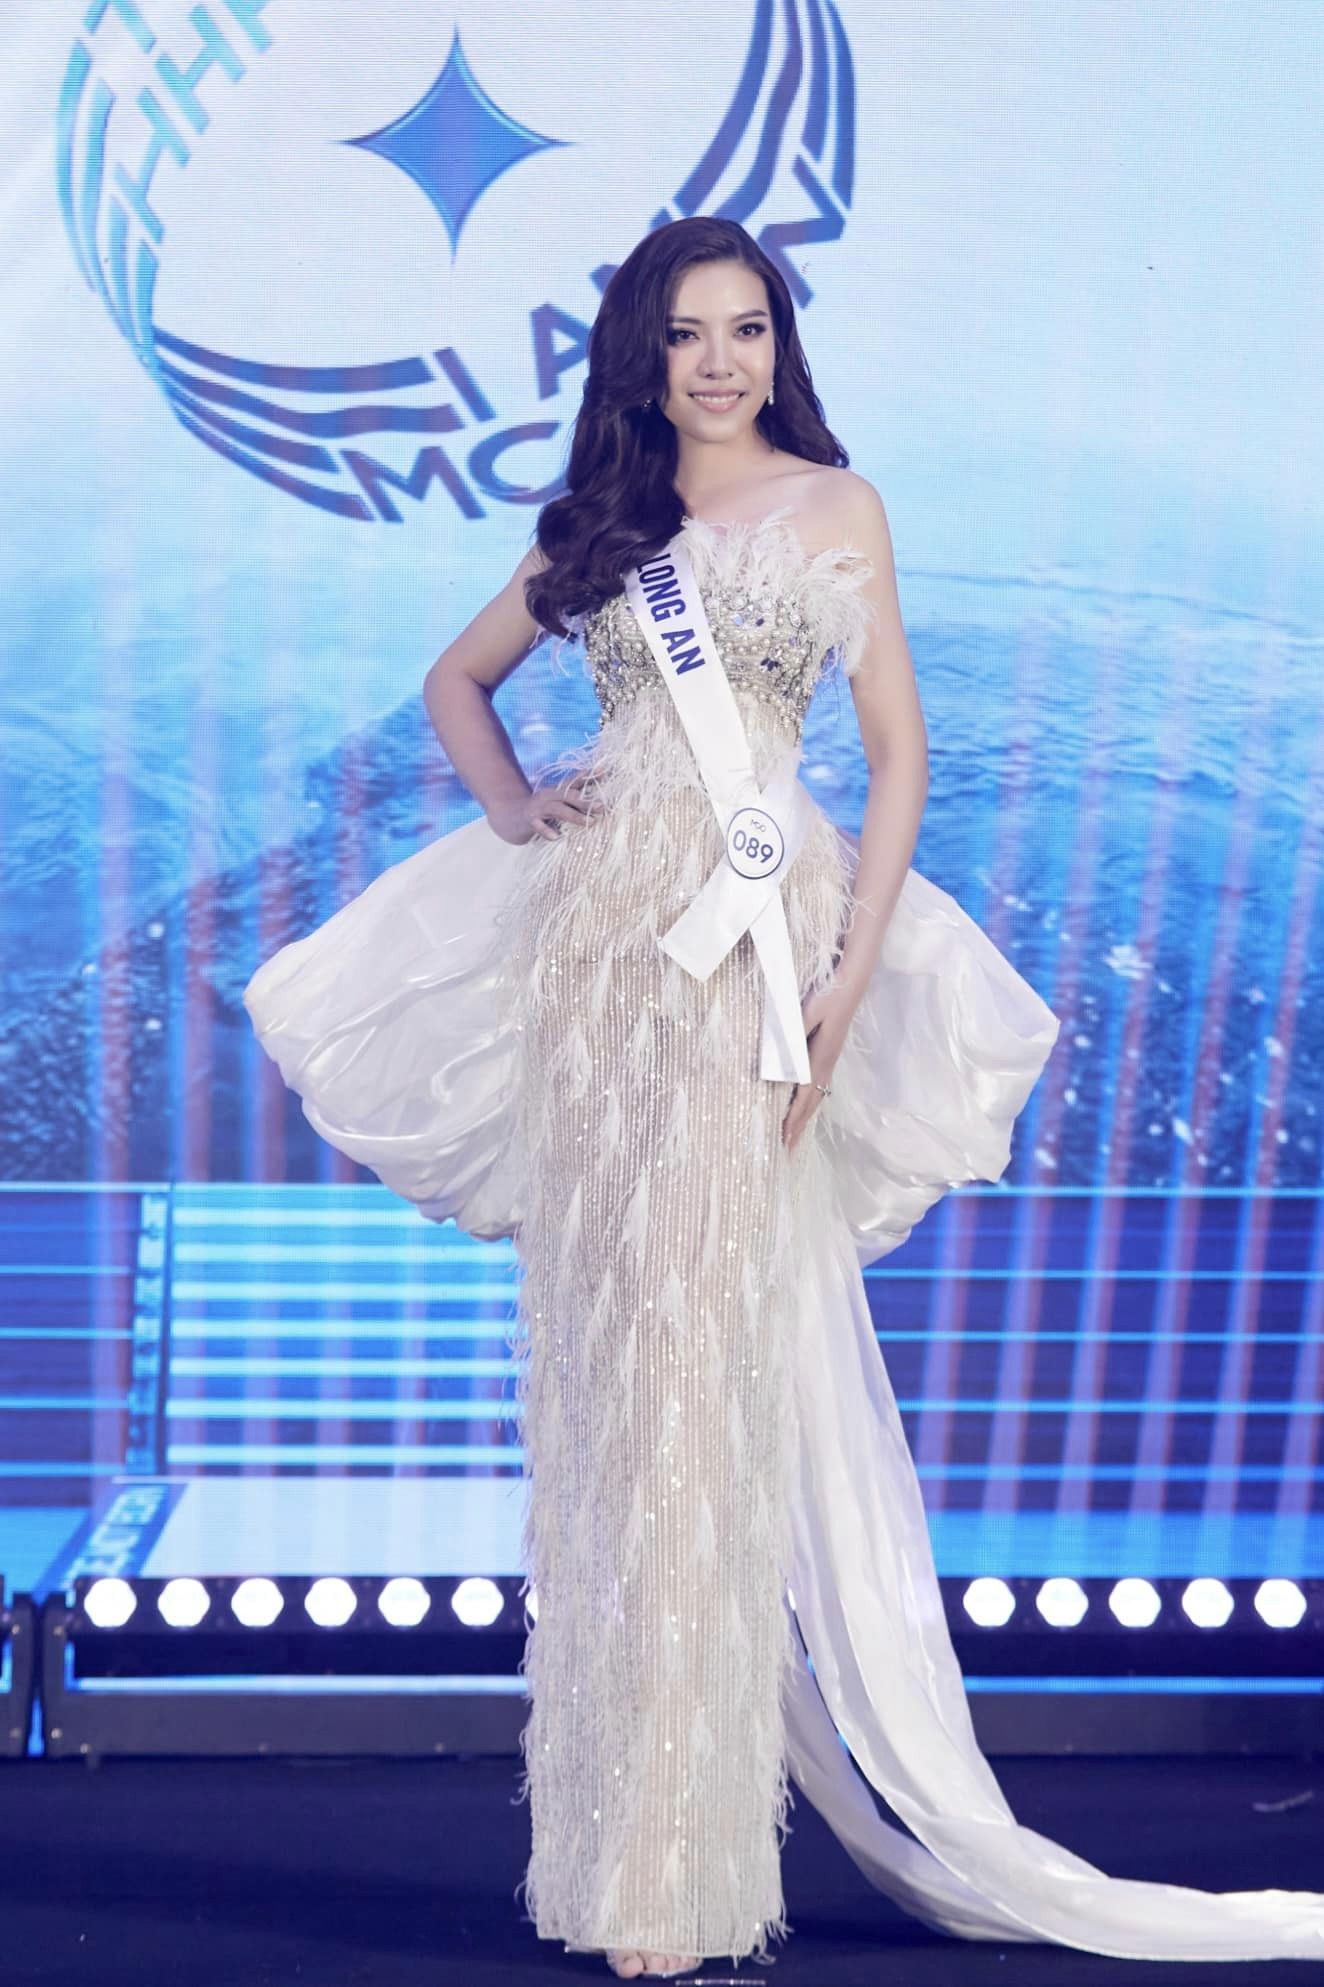 Nhan sắc cô gái cao 1,8m ở Hoa hậu Hoàn vũ Việt Nam  - Ảnh 4.